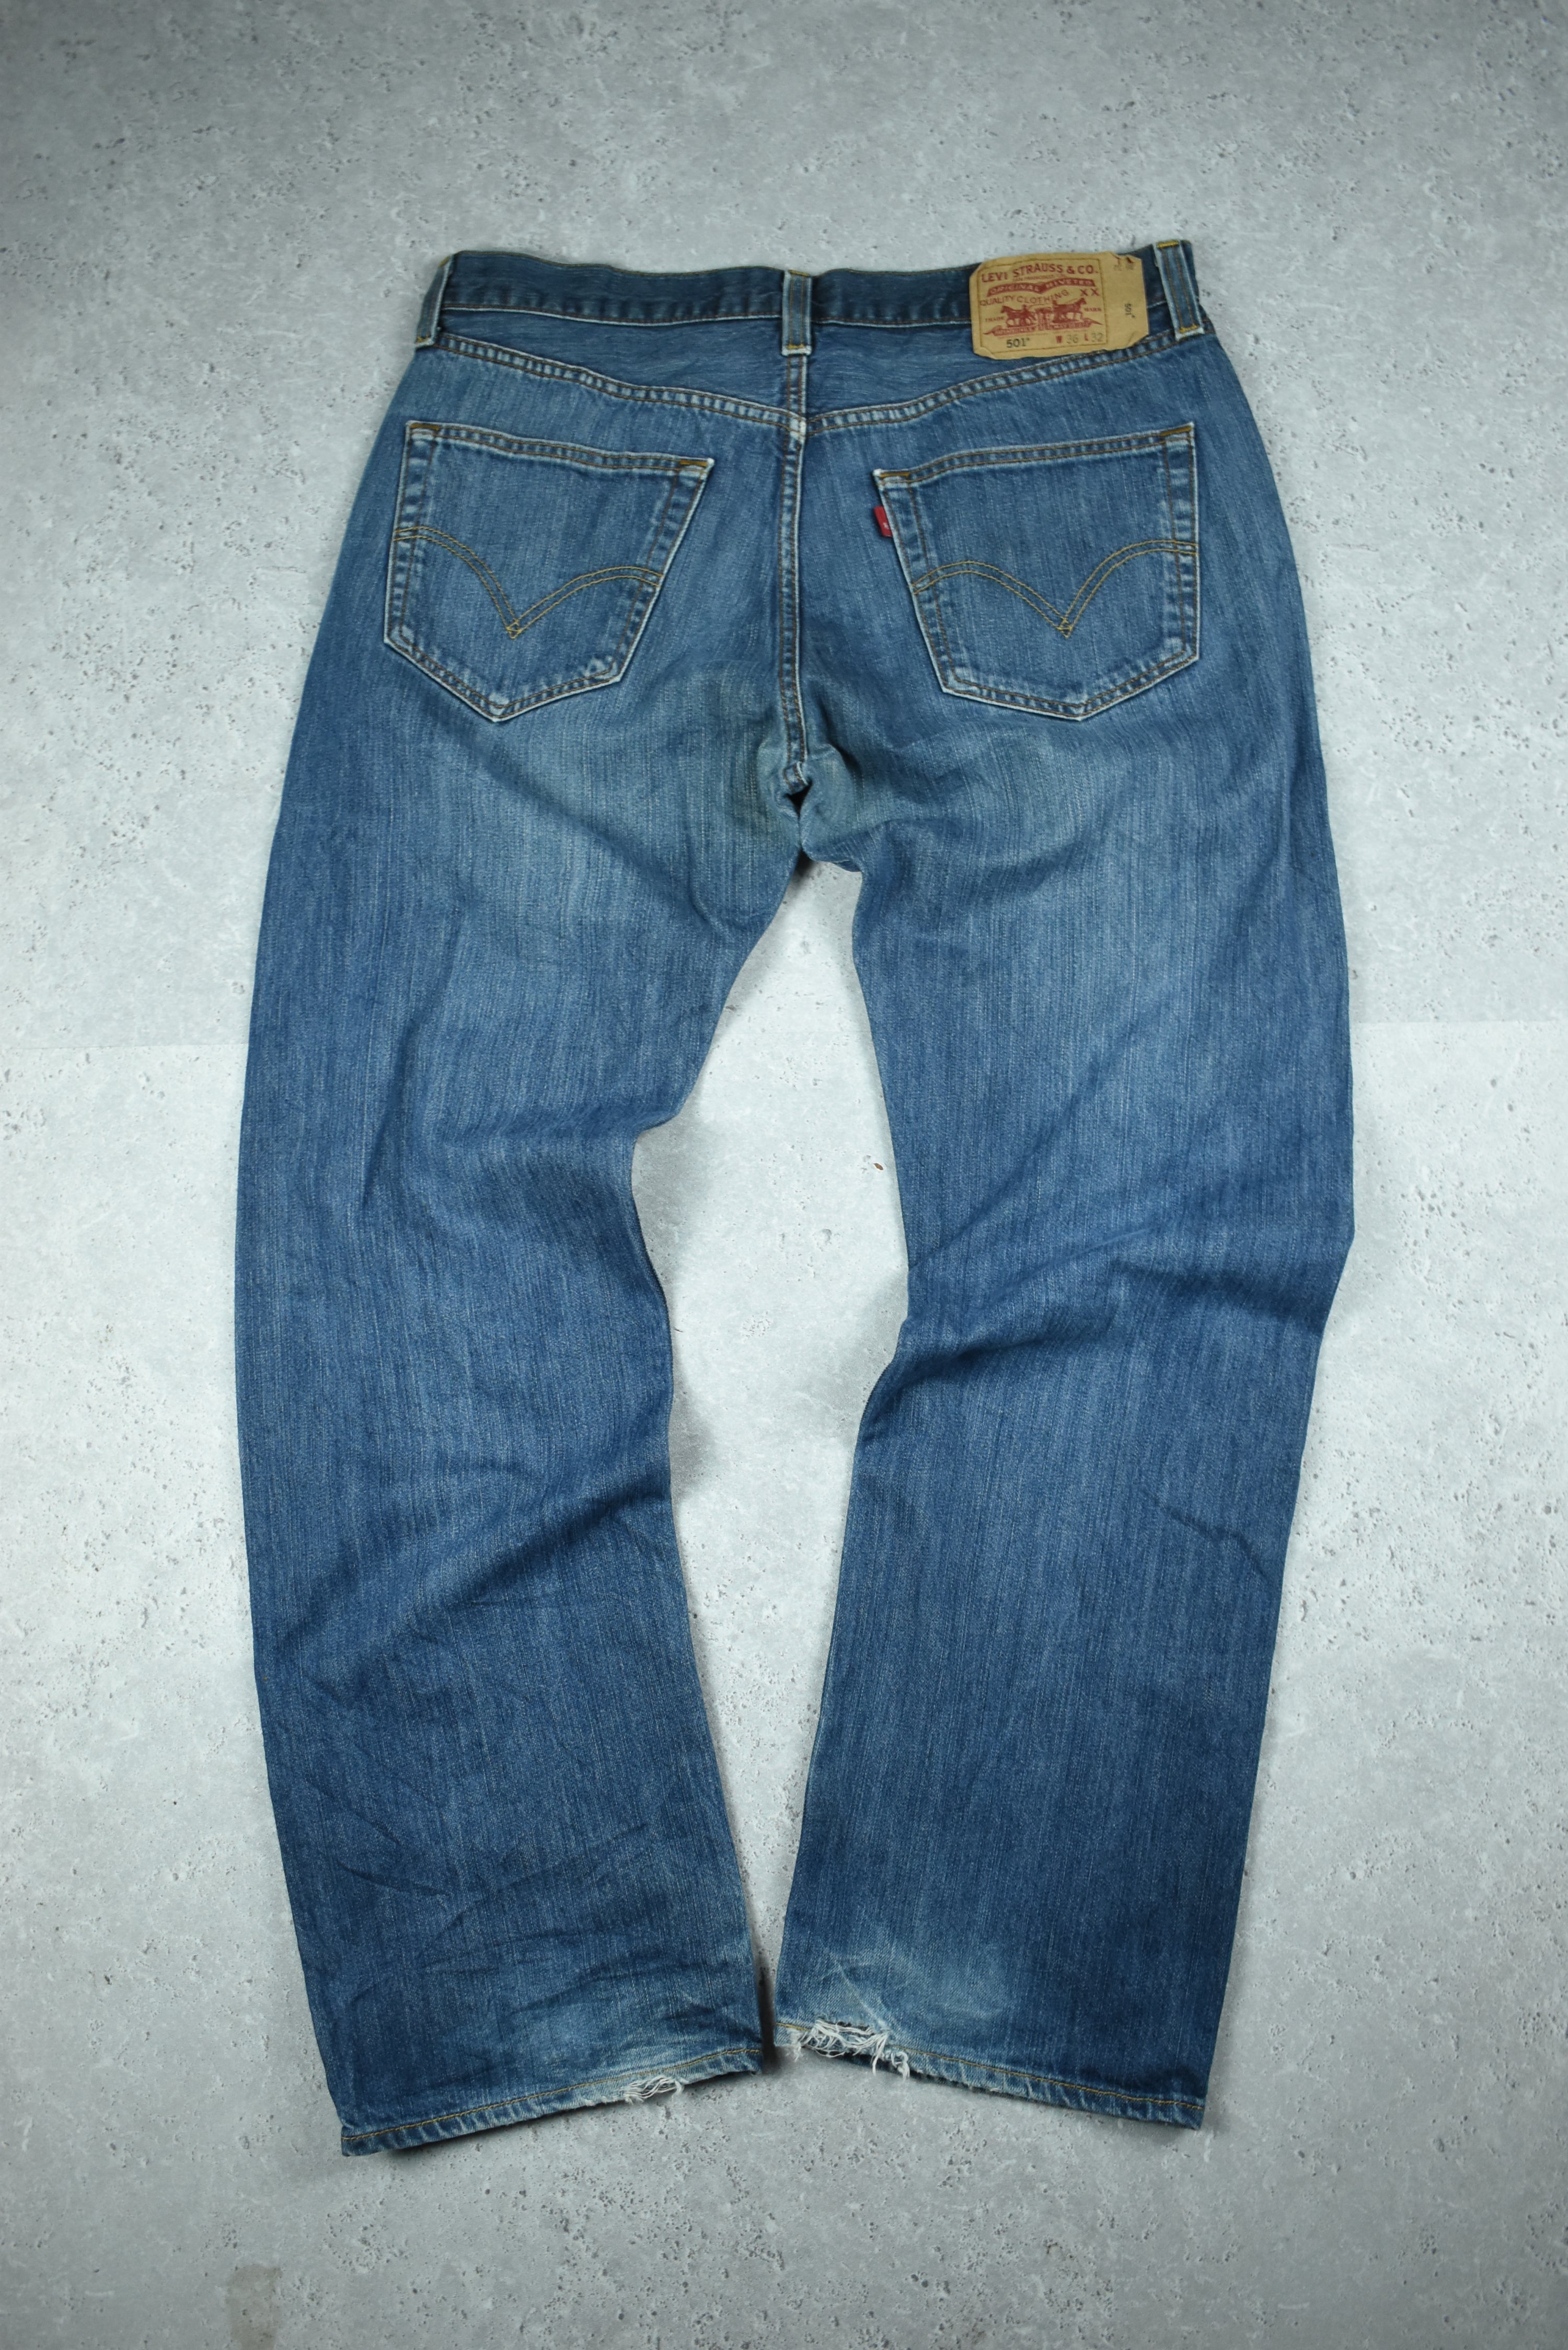 Vintage Levis 501 Denim Jeans 36x32